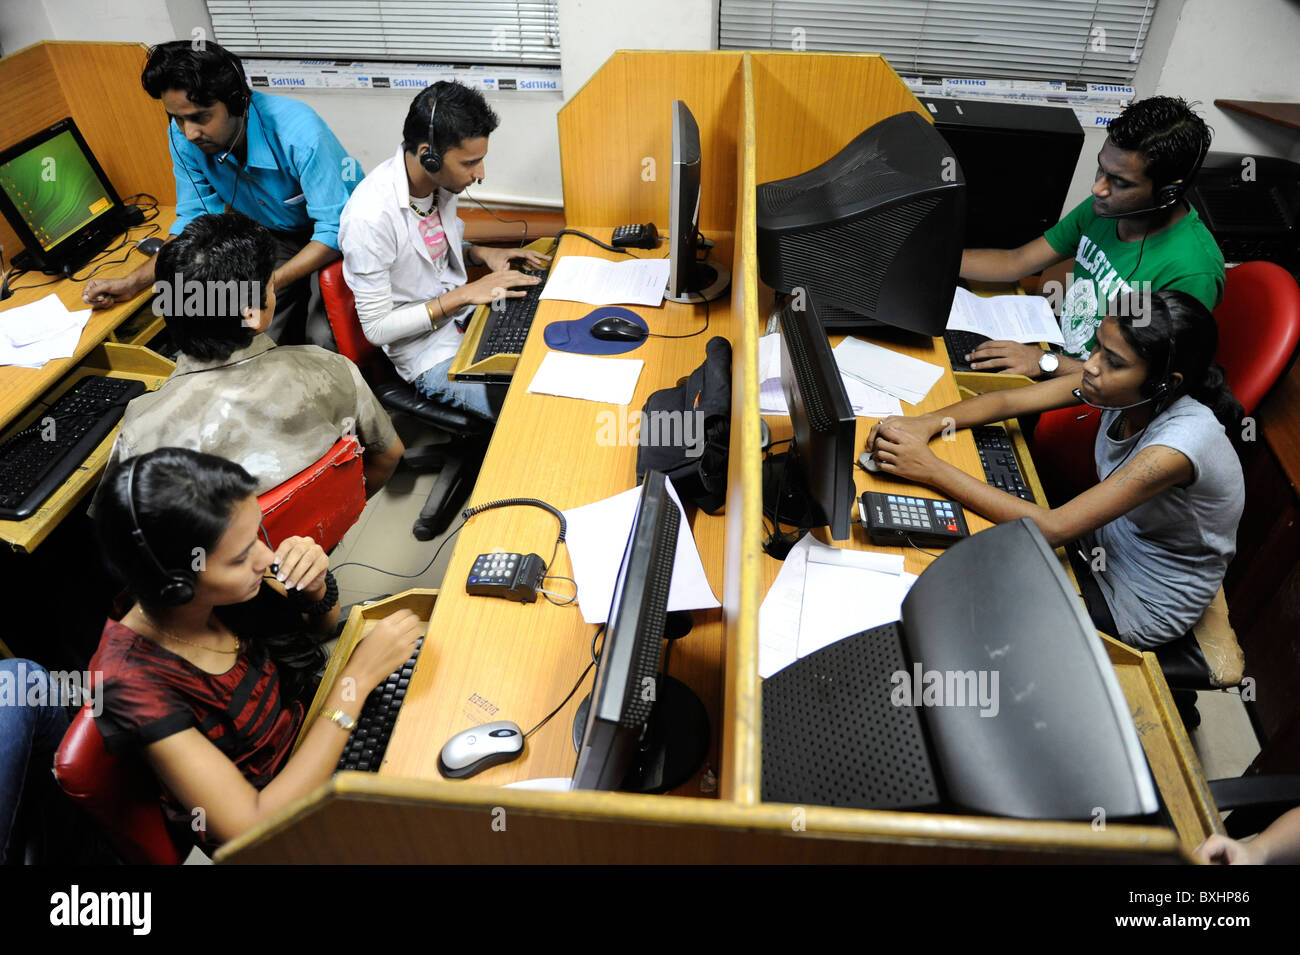 Asie du Sud Inde Mumbai Calcutta , les jeunes femmes travaillent dans le centre d'appel nous appelant ou client britannique Banque D'Images